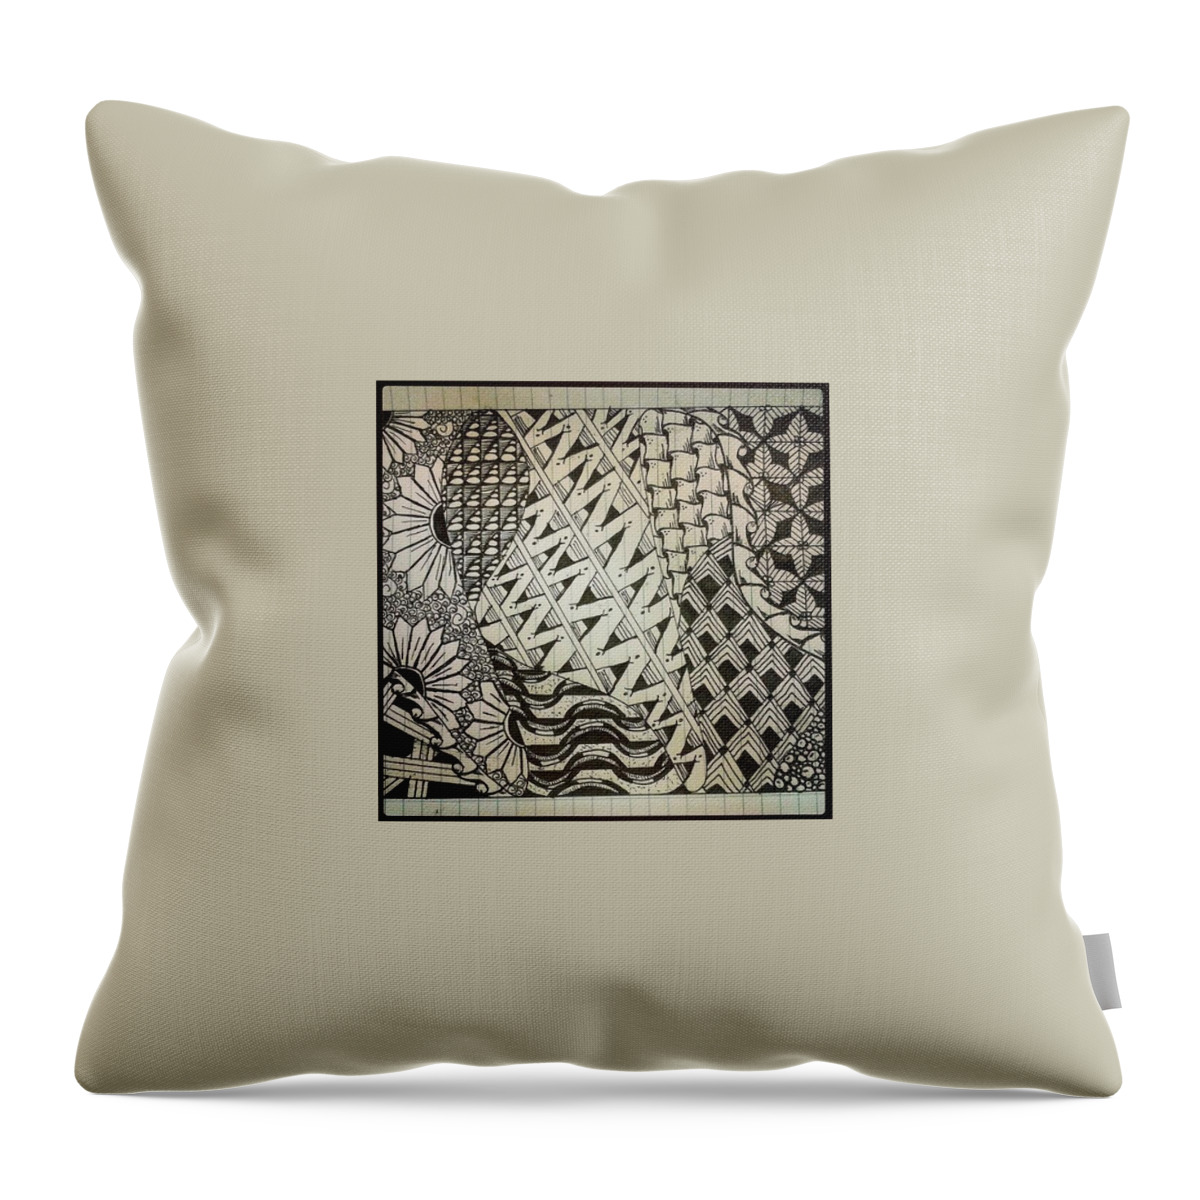 Beautiful Throw Pillow featuring the photograph Sunflower Zentangles by Meg McG